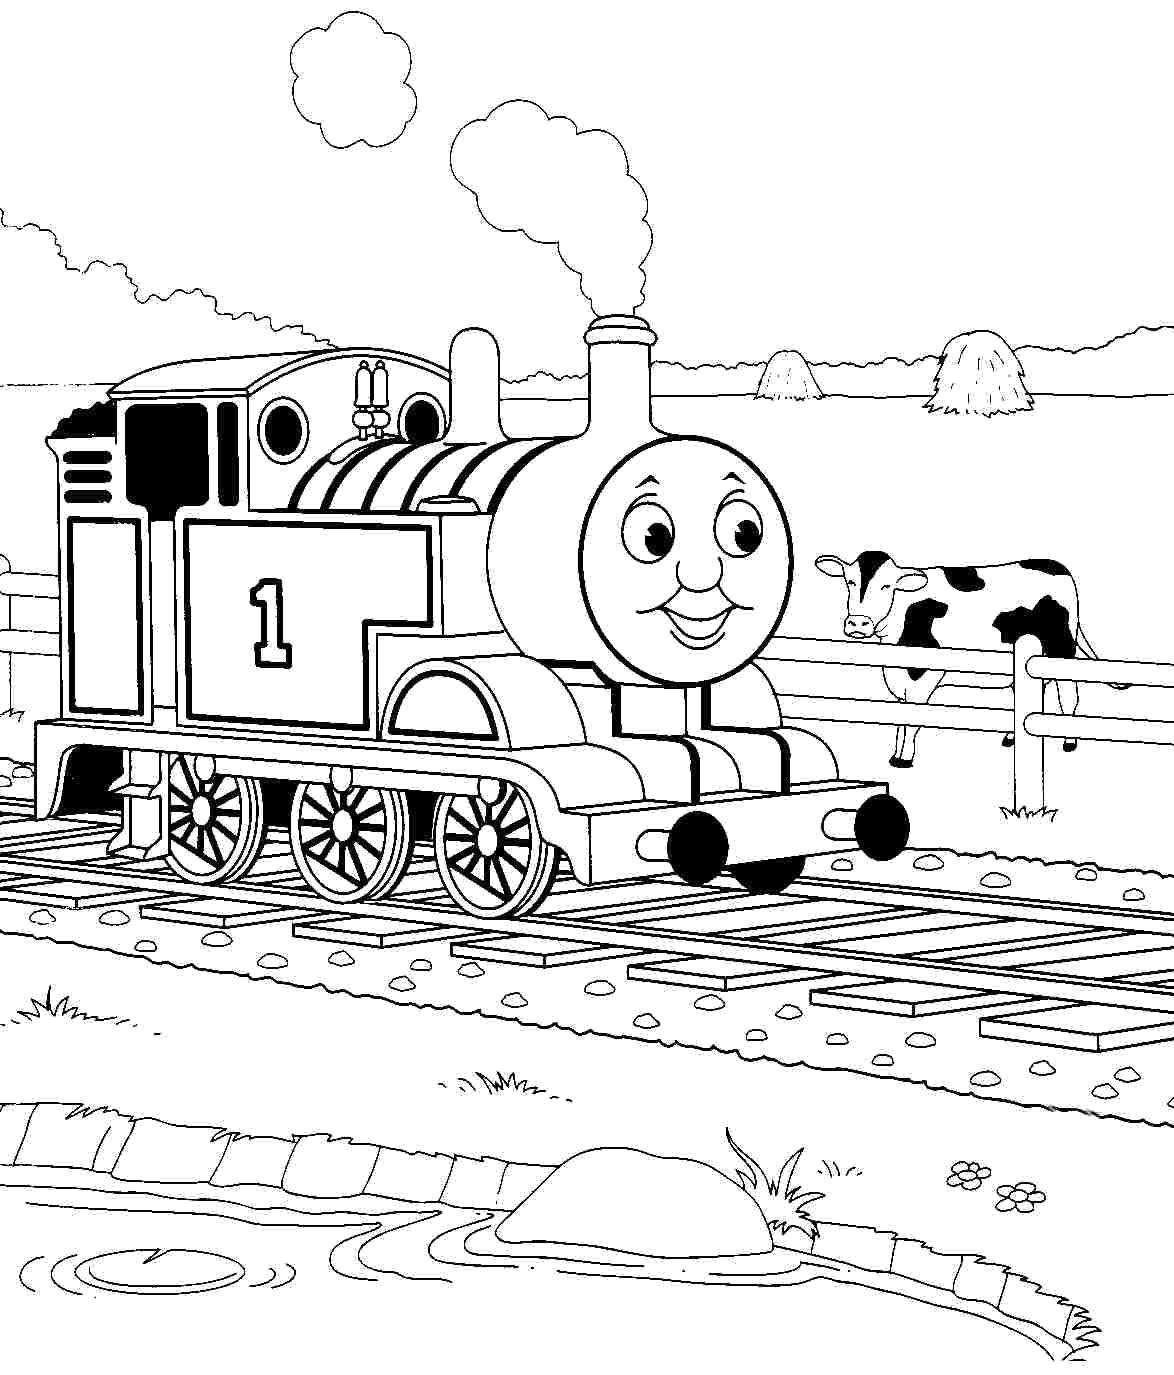 Название: Раскраска Паровозик томас. Категория: поезд. Теги: Паровозик, Томас.